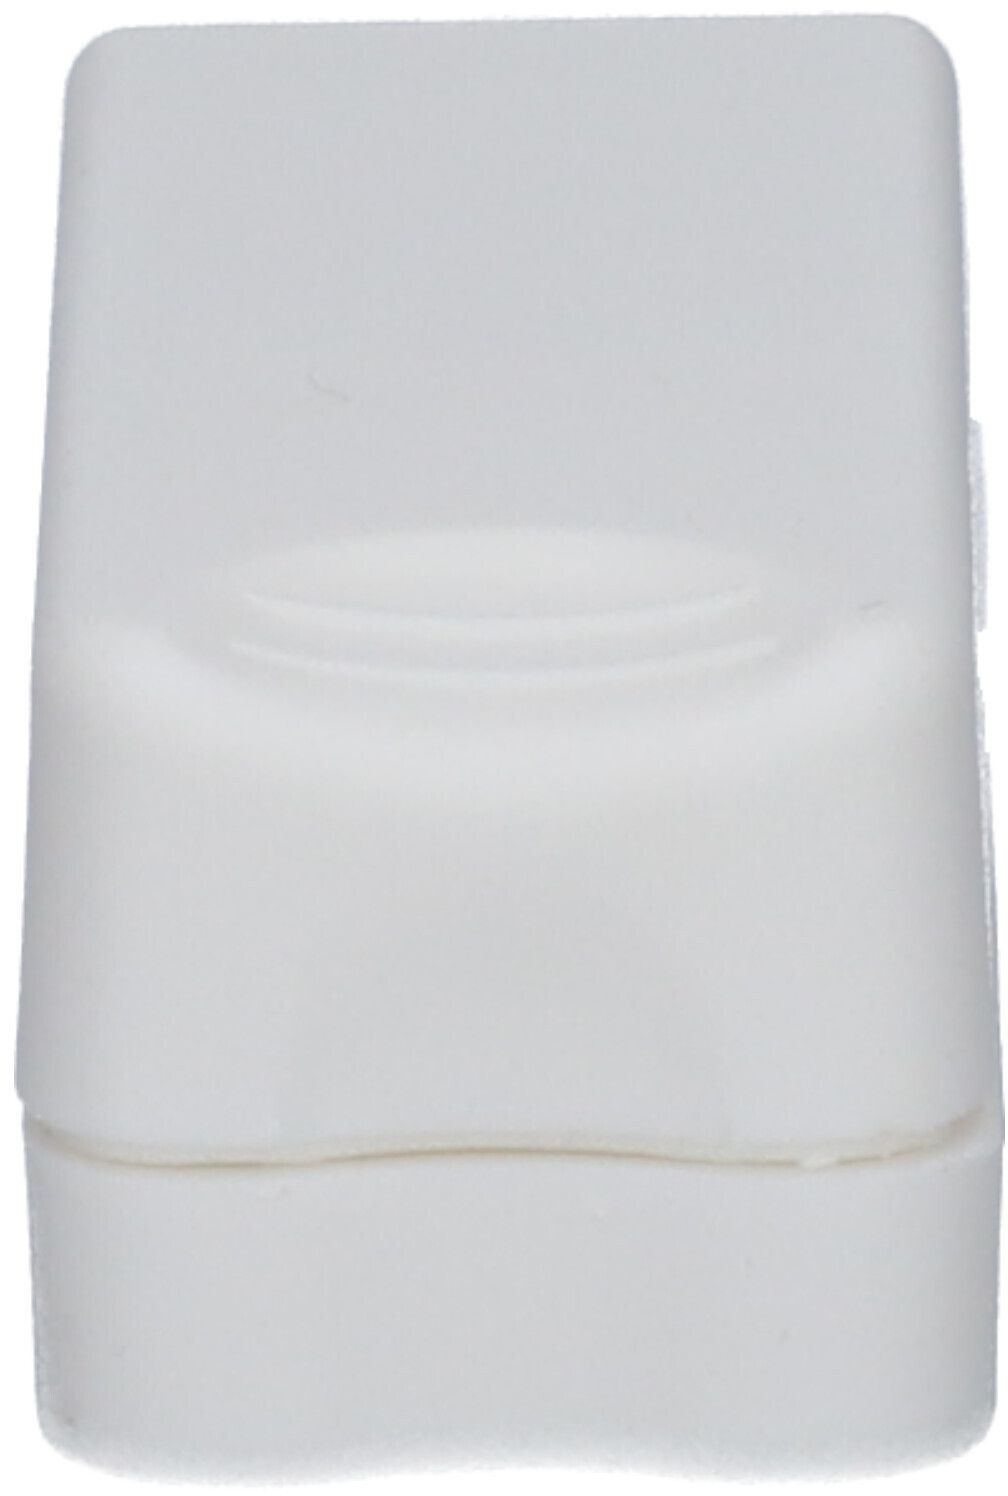 Adhome Coupe-médicaments compact blanc 1 pc(s) Séparateur de tablettes